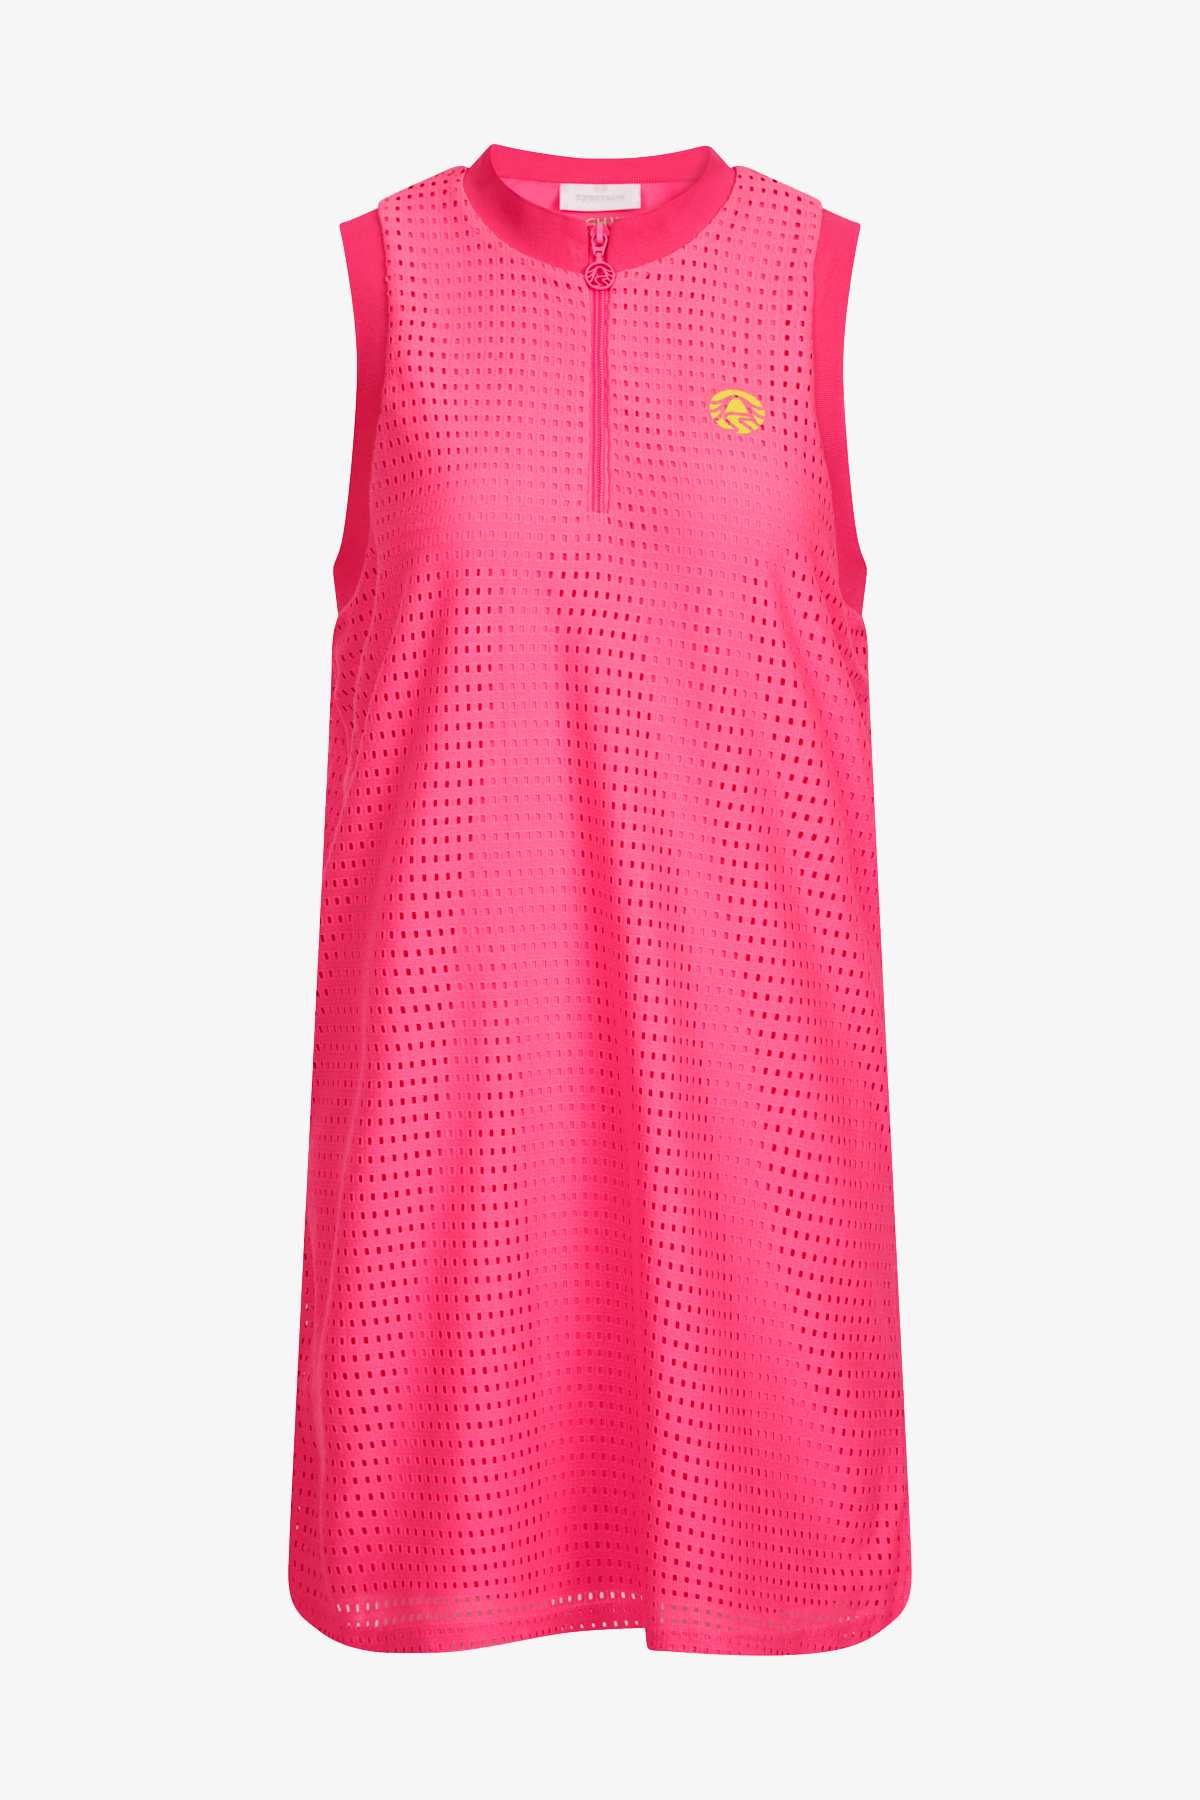 Sportalm šaty Dolly candy pink Velikost: 38